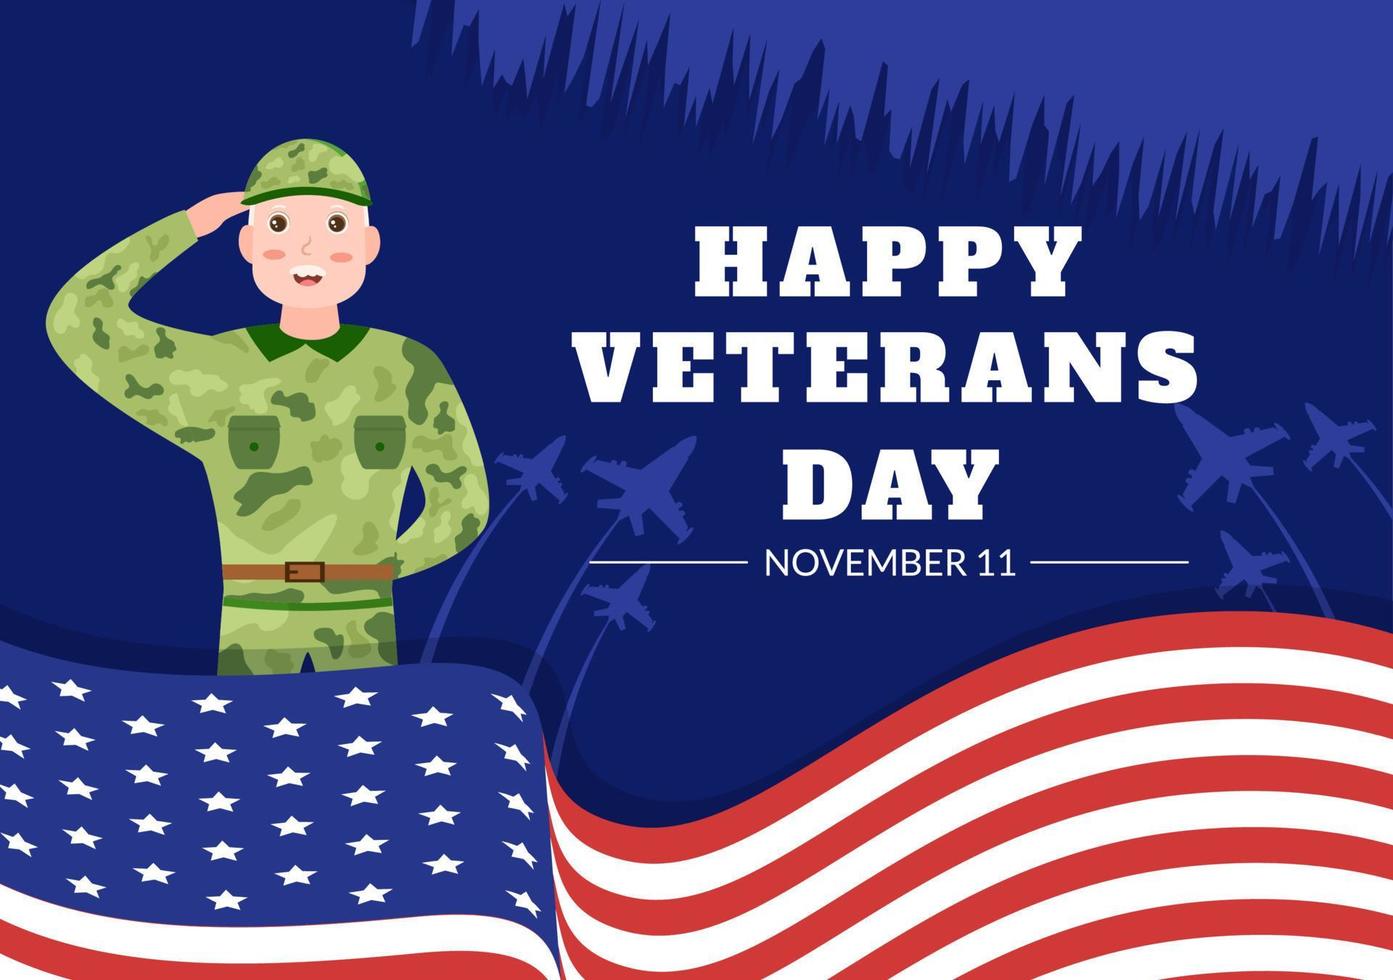 journée des anciens combattants le 11 novembre modèle illustration plate de dessin animé dessiné à la main avec le drapeau américain et l'armée pour honorer tous ceux qui ont servi vecteur